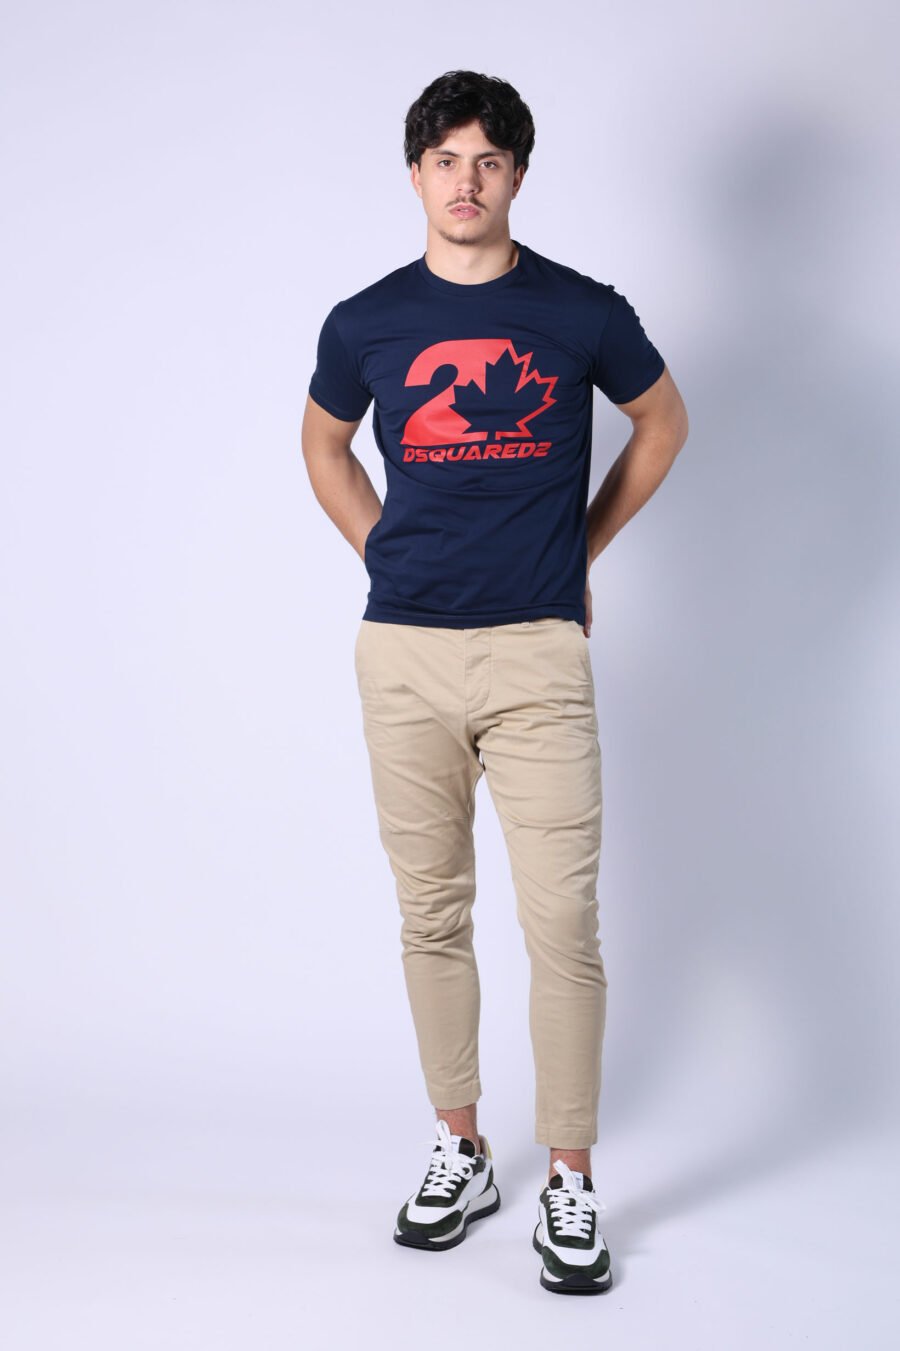 T-shirt bleu foncé avec mini-logo rouge dans un graphisme de feuilles - Untitled Catalog 05627